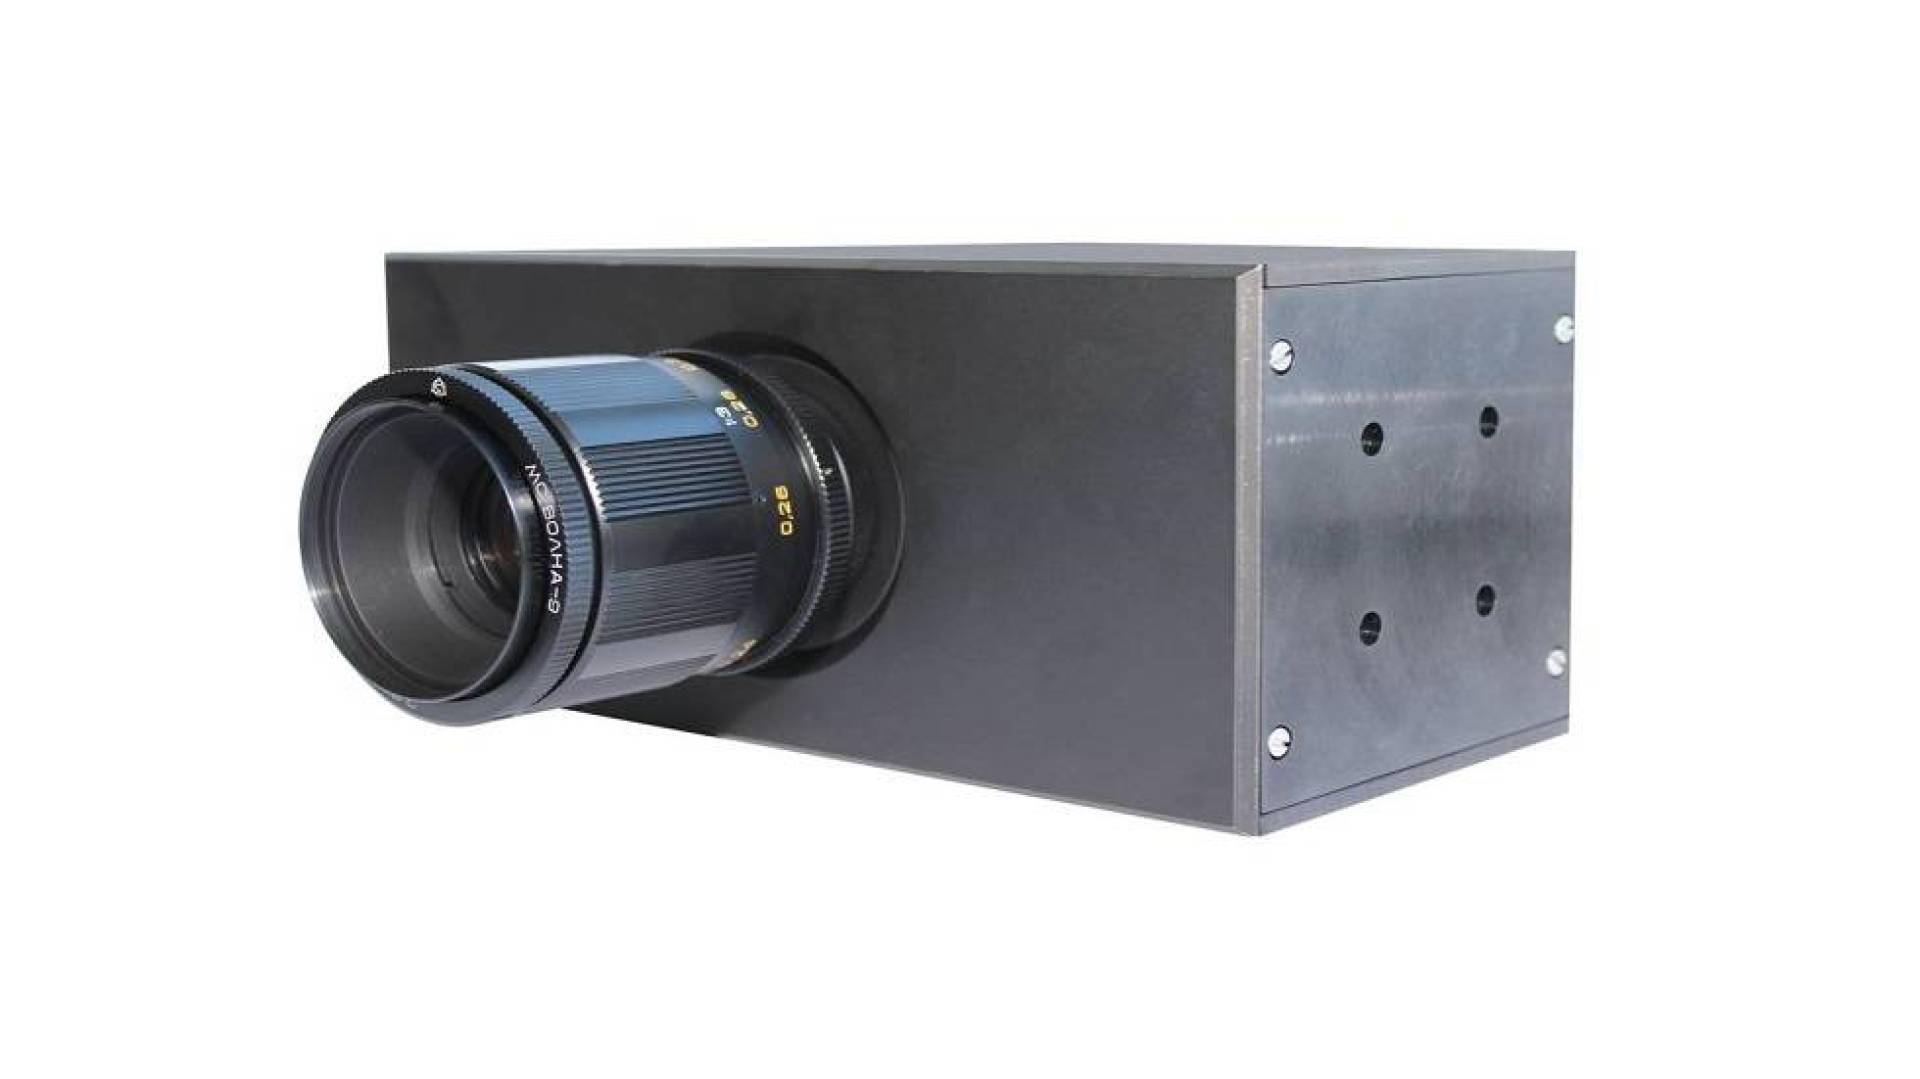 شركة روس إلكترونيكا تطور كاميرا تعمل بالأشعة تحت الحمراء بمدى كشف يصل إلى 20 كيلومترًا